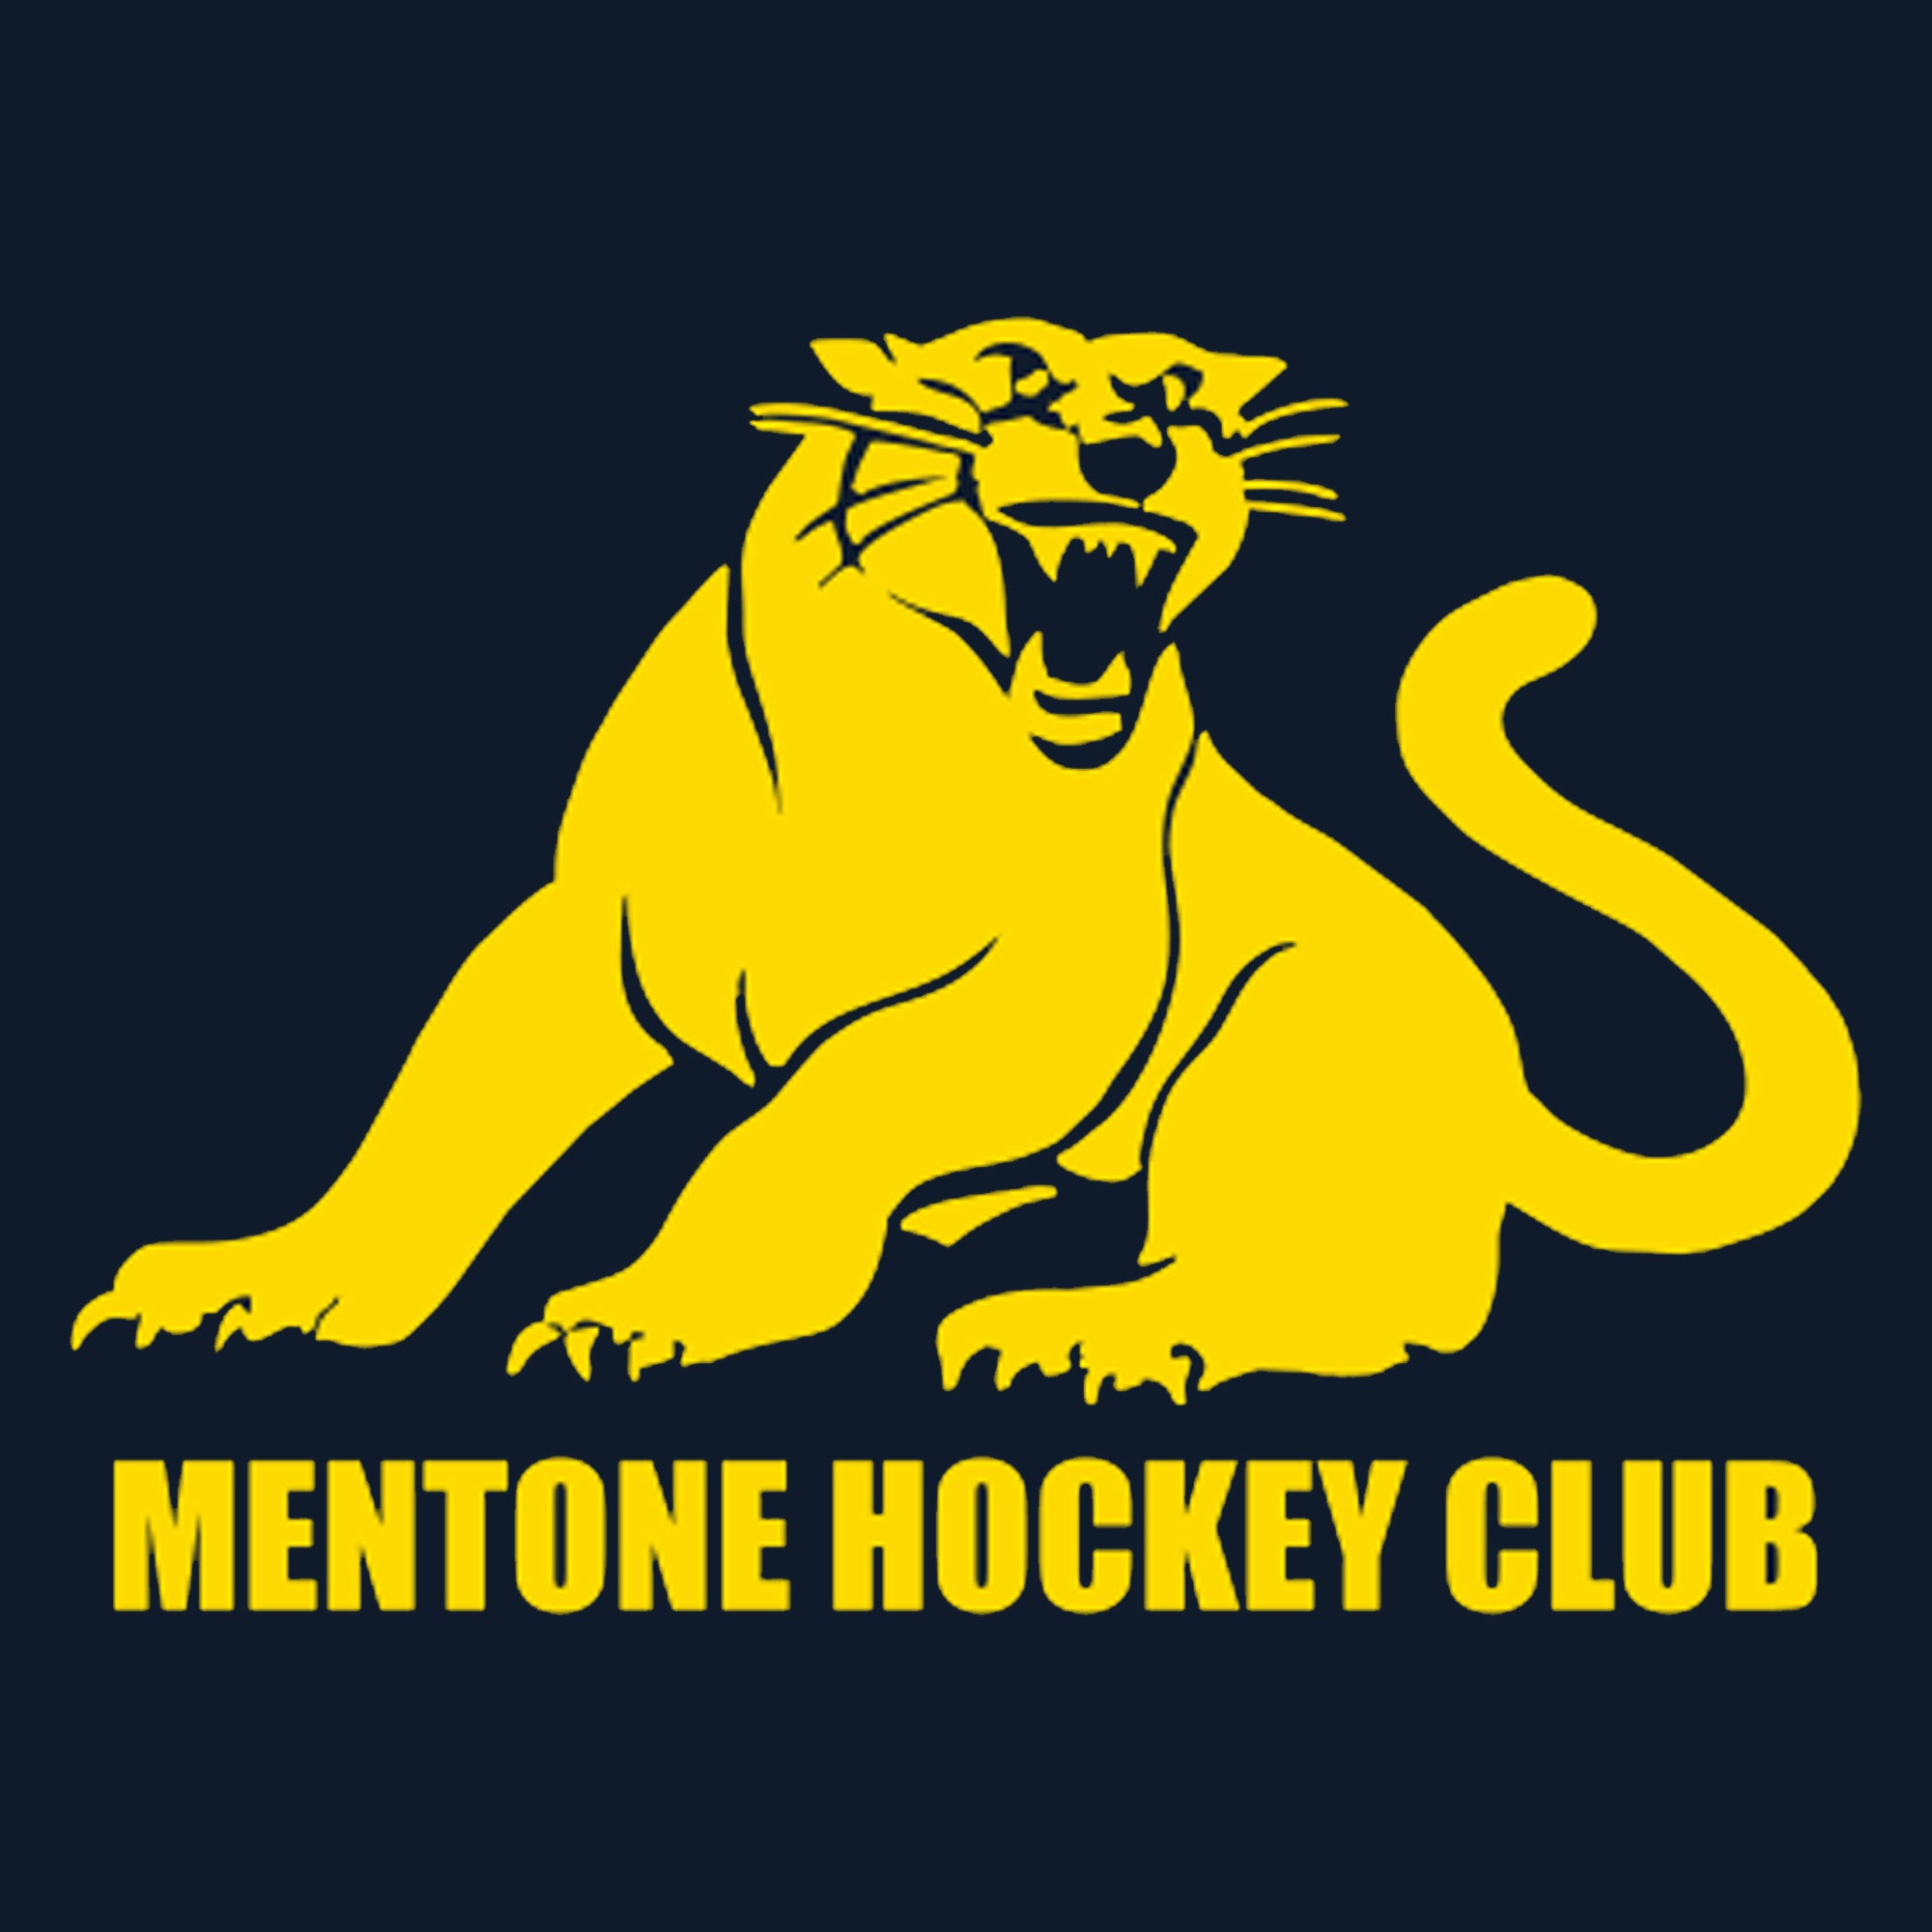 Mentone Hockey Club